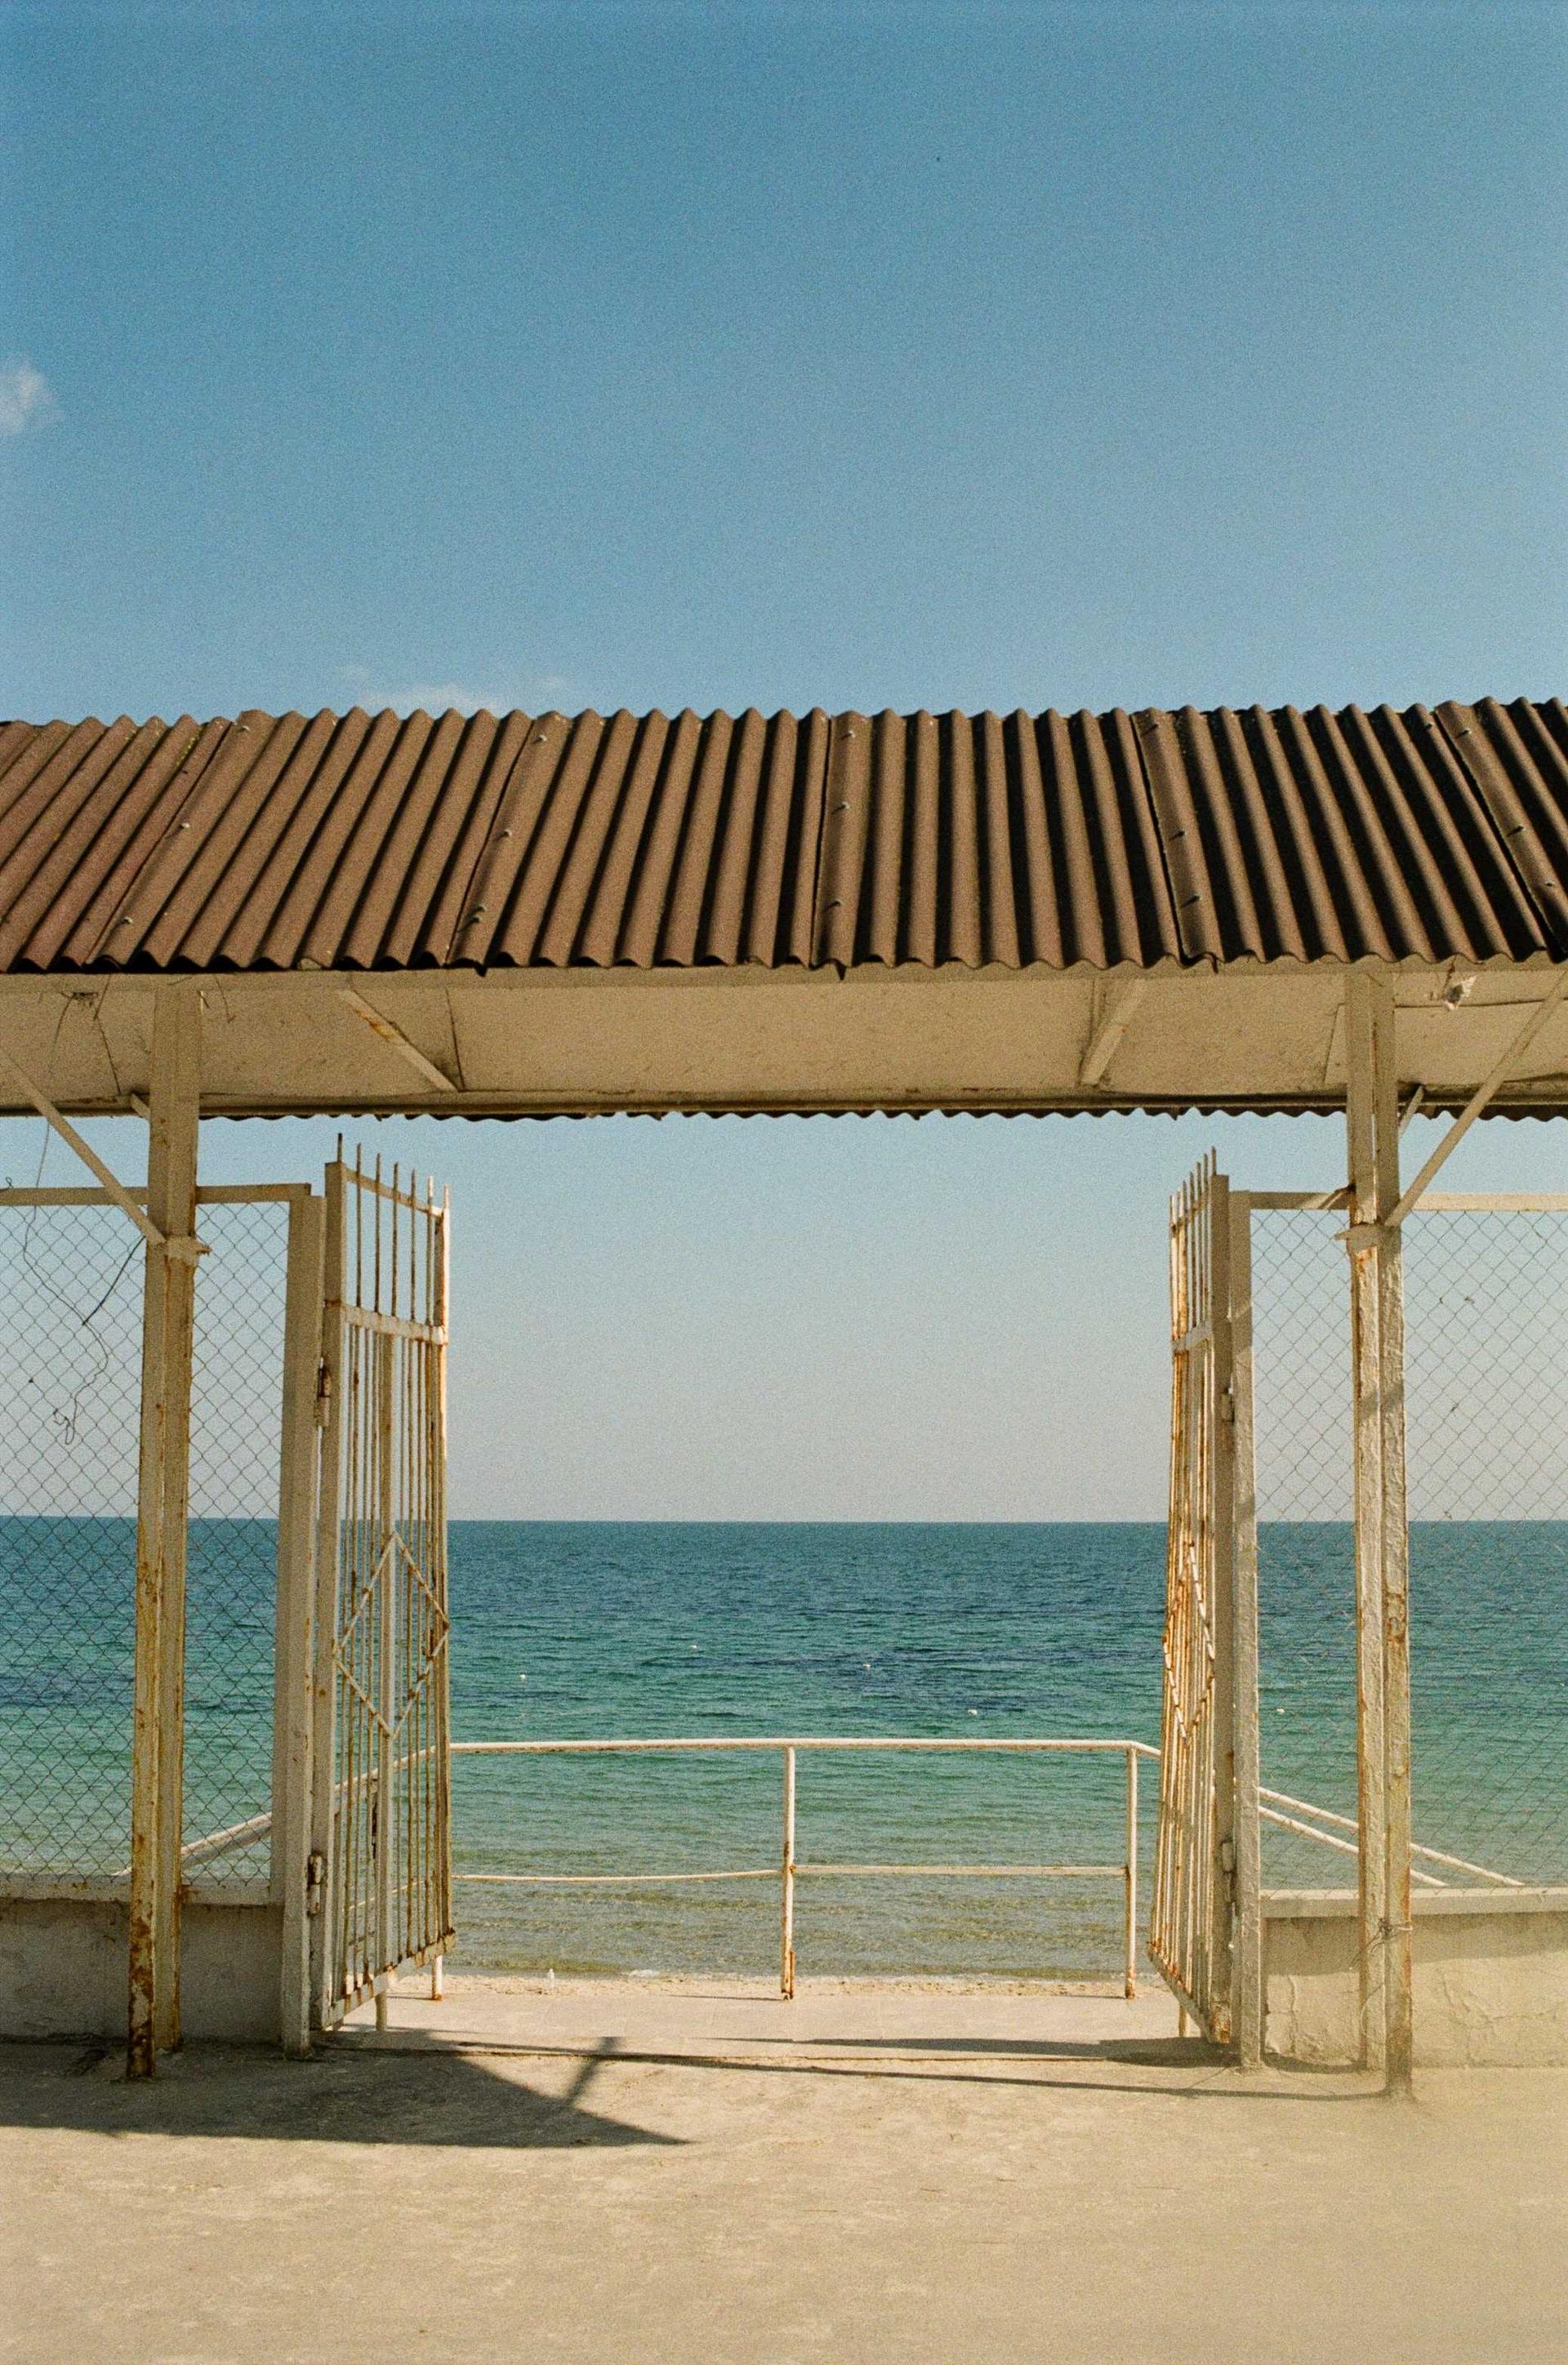 A gate to the beach